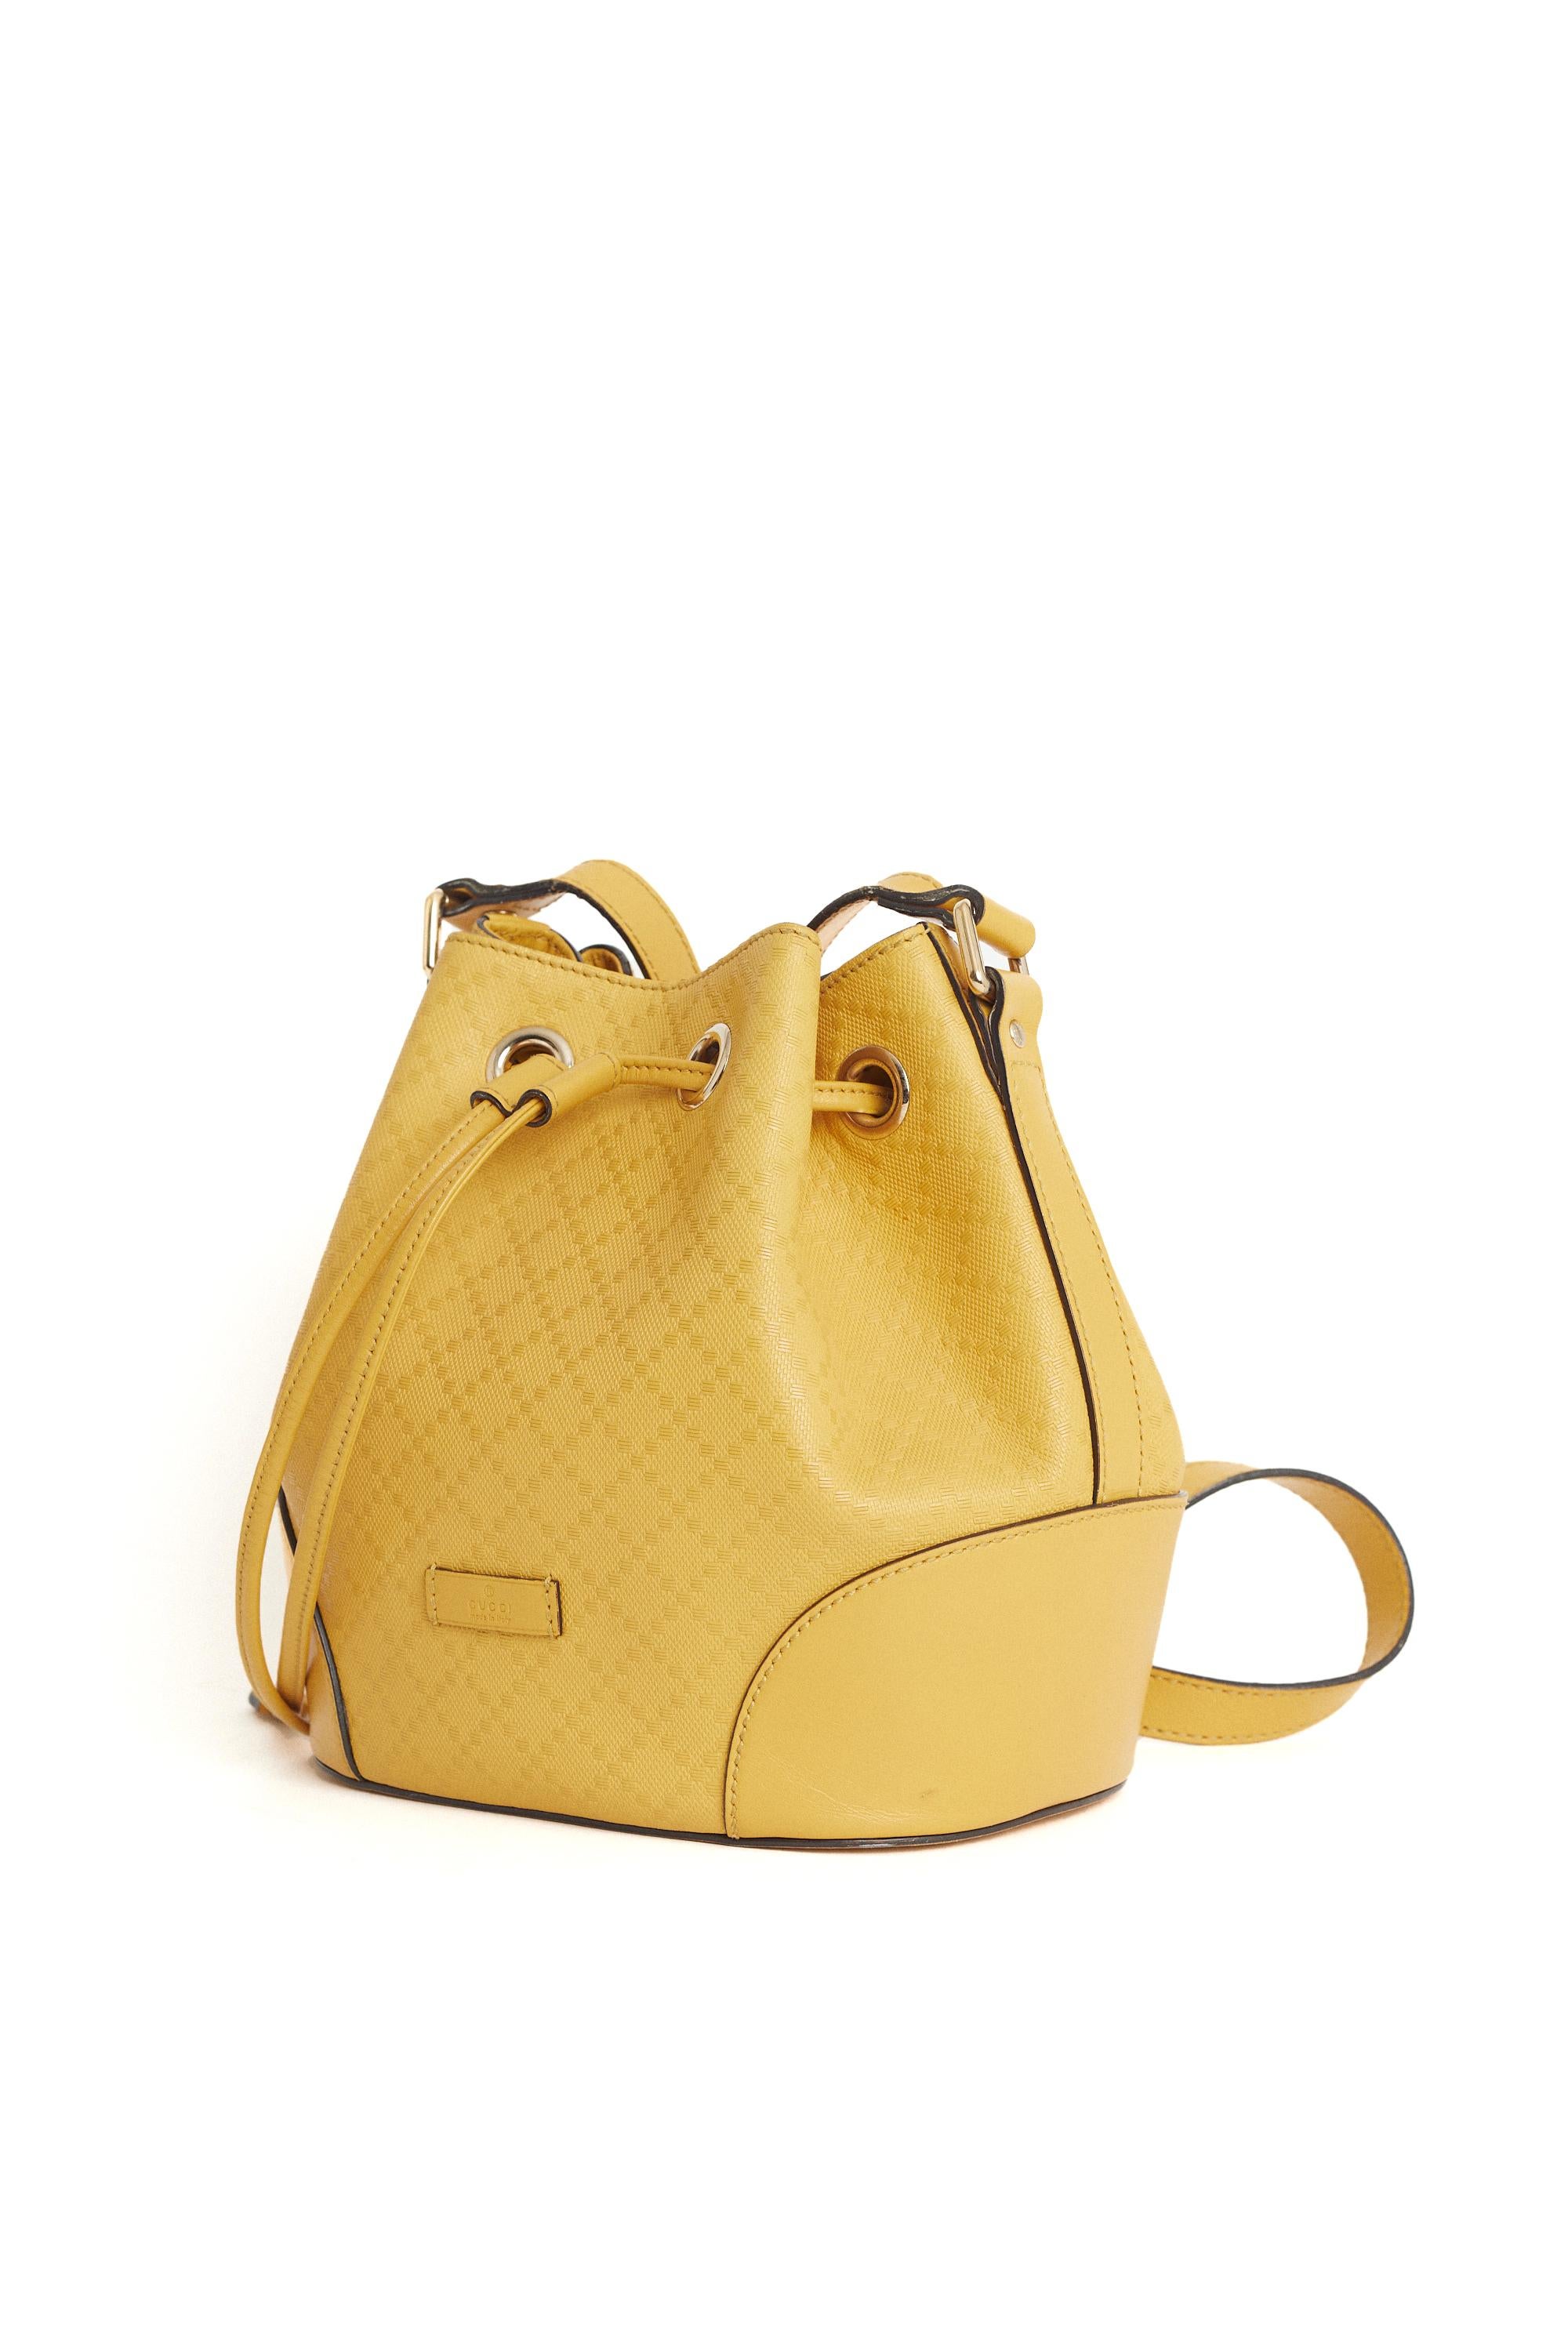 Vintage 2000's Gucci gelb diamante geprägte Bucket Bag. Mit einem verstellbaren, flachen Lederschulterriemen und einer offenen Oberseite mit Kordelzugverschluss,  Reißverschluss- und Steckfächer innen. Vorgetragen, in ausgezeichnetem Vintage-Zustand